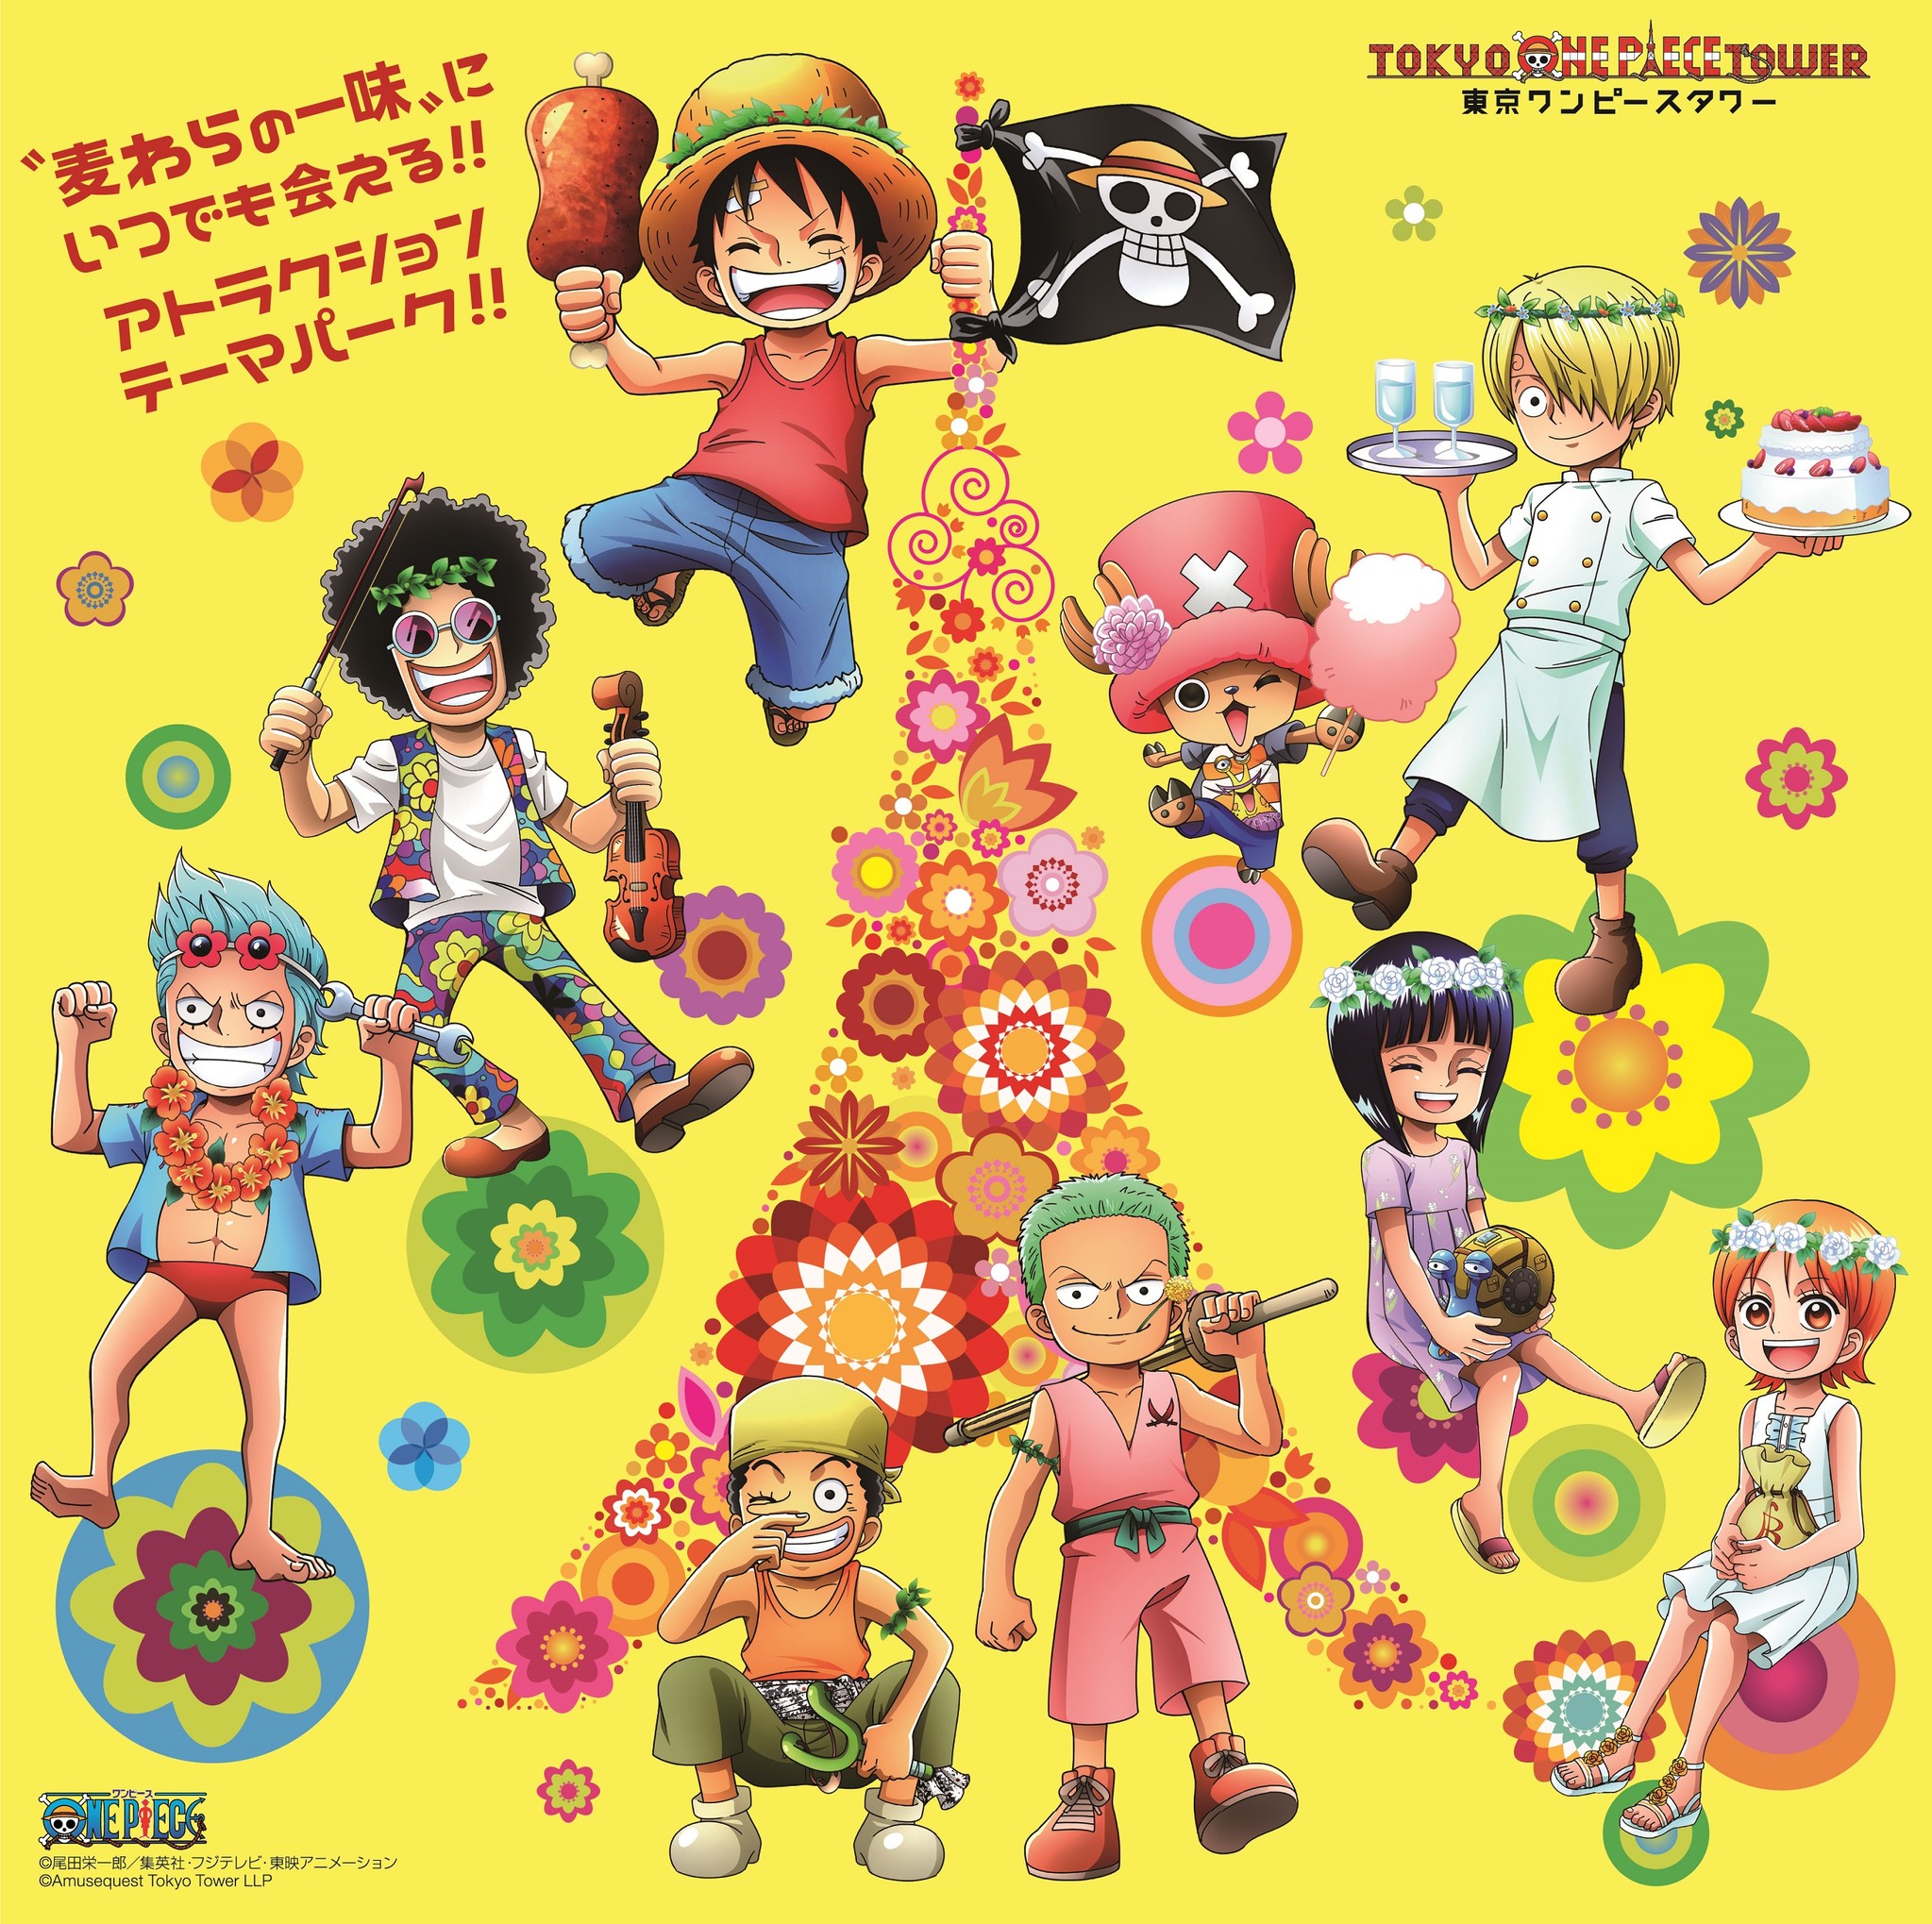 東京ワンピースタワーで大人気の One Piece Live Attraction 最新作が尾田栄一郎監修でいよいよ2017年4月29日 土 開幕 東京ワンピースタワーのプレスリリース